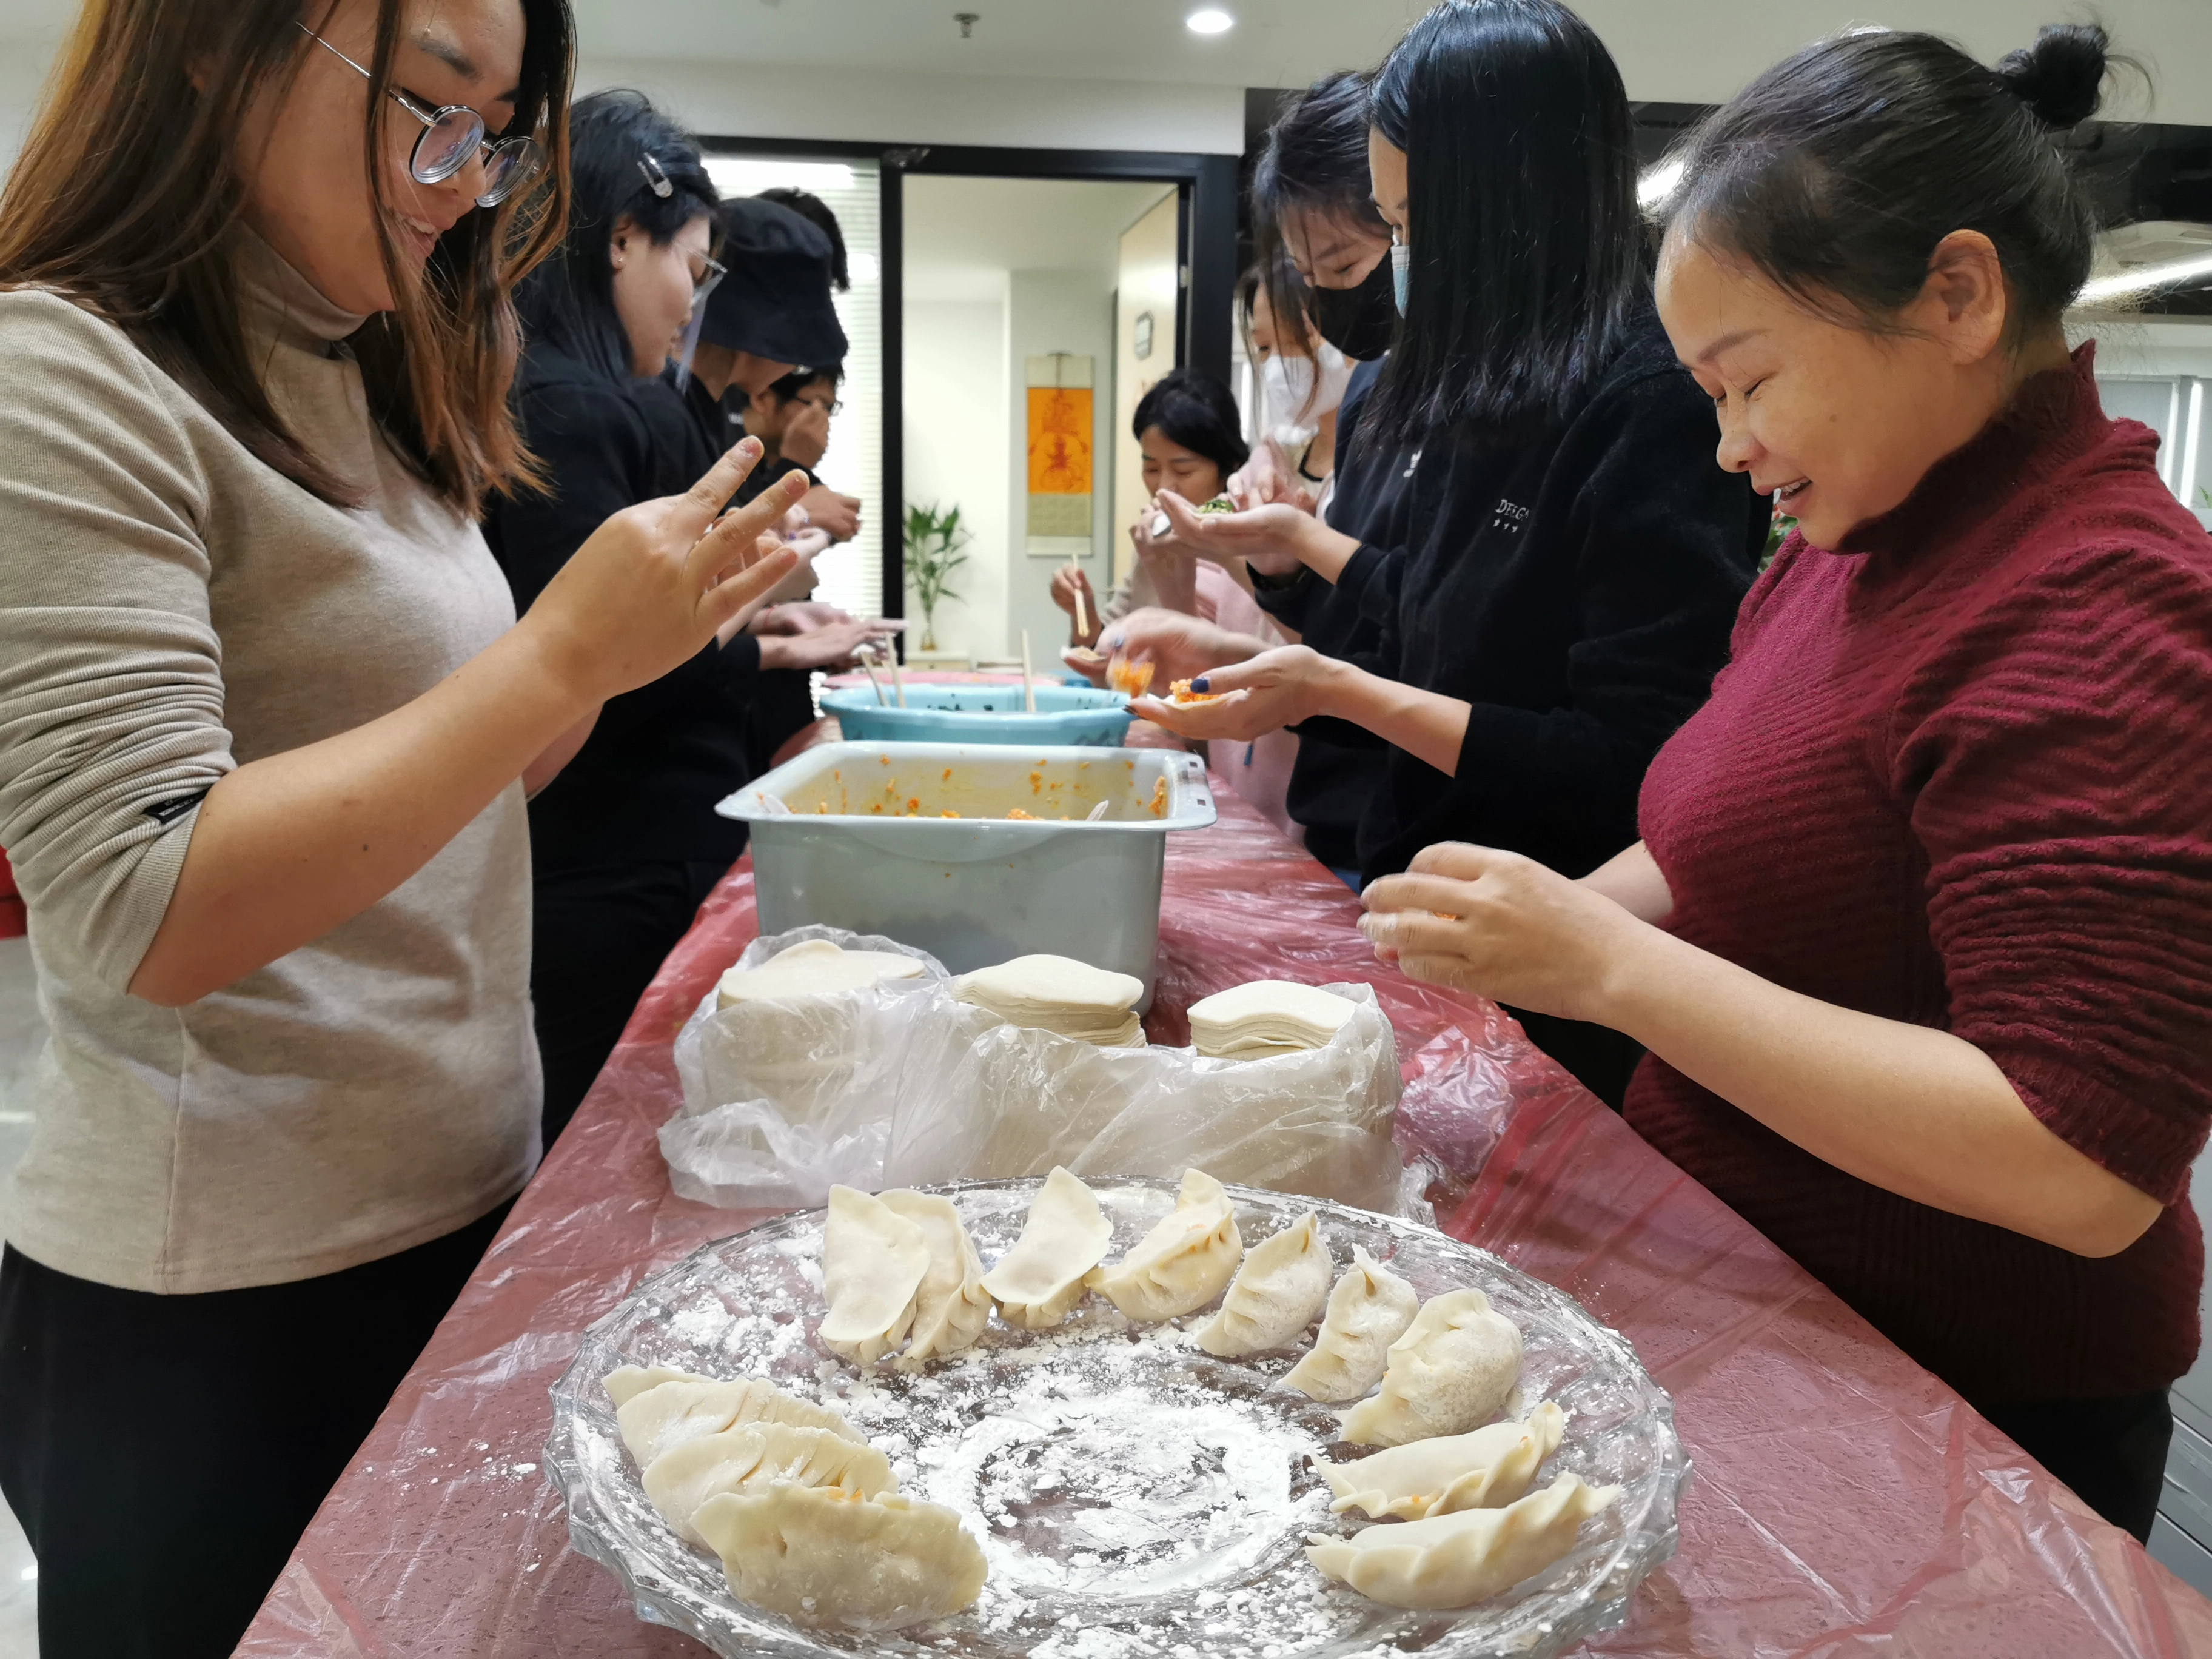 China Hey members! Let's eat dumplings! manufacturer